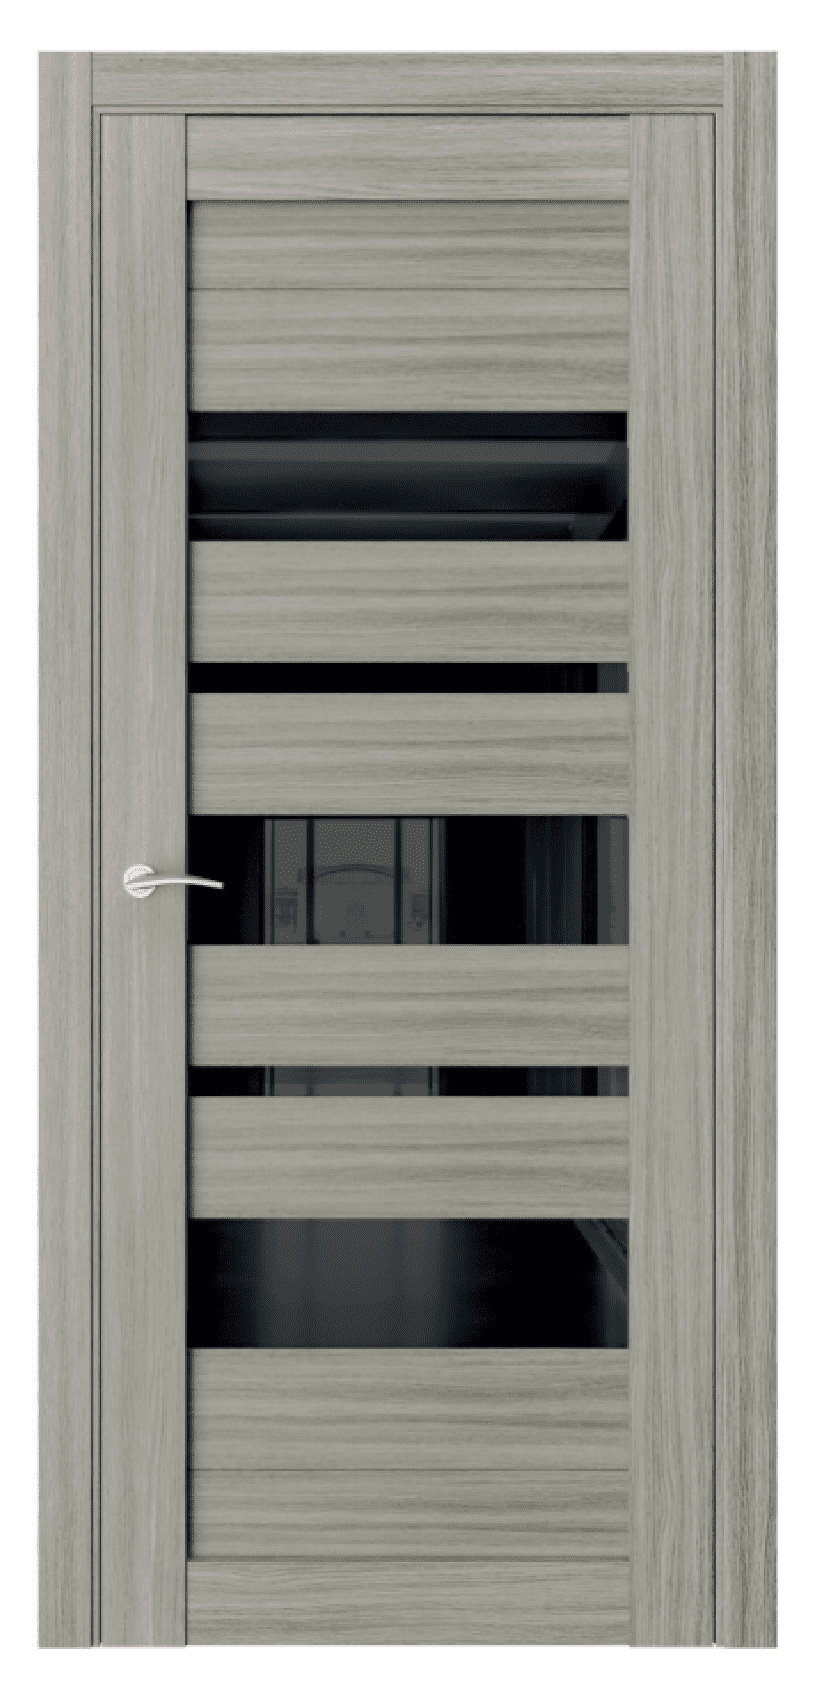 Questdoors Межкомнатная дверь Q13, арт. 17464 - фото №1